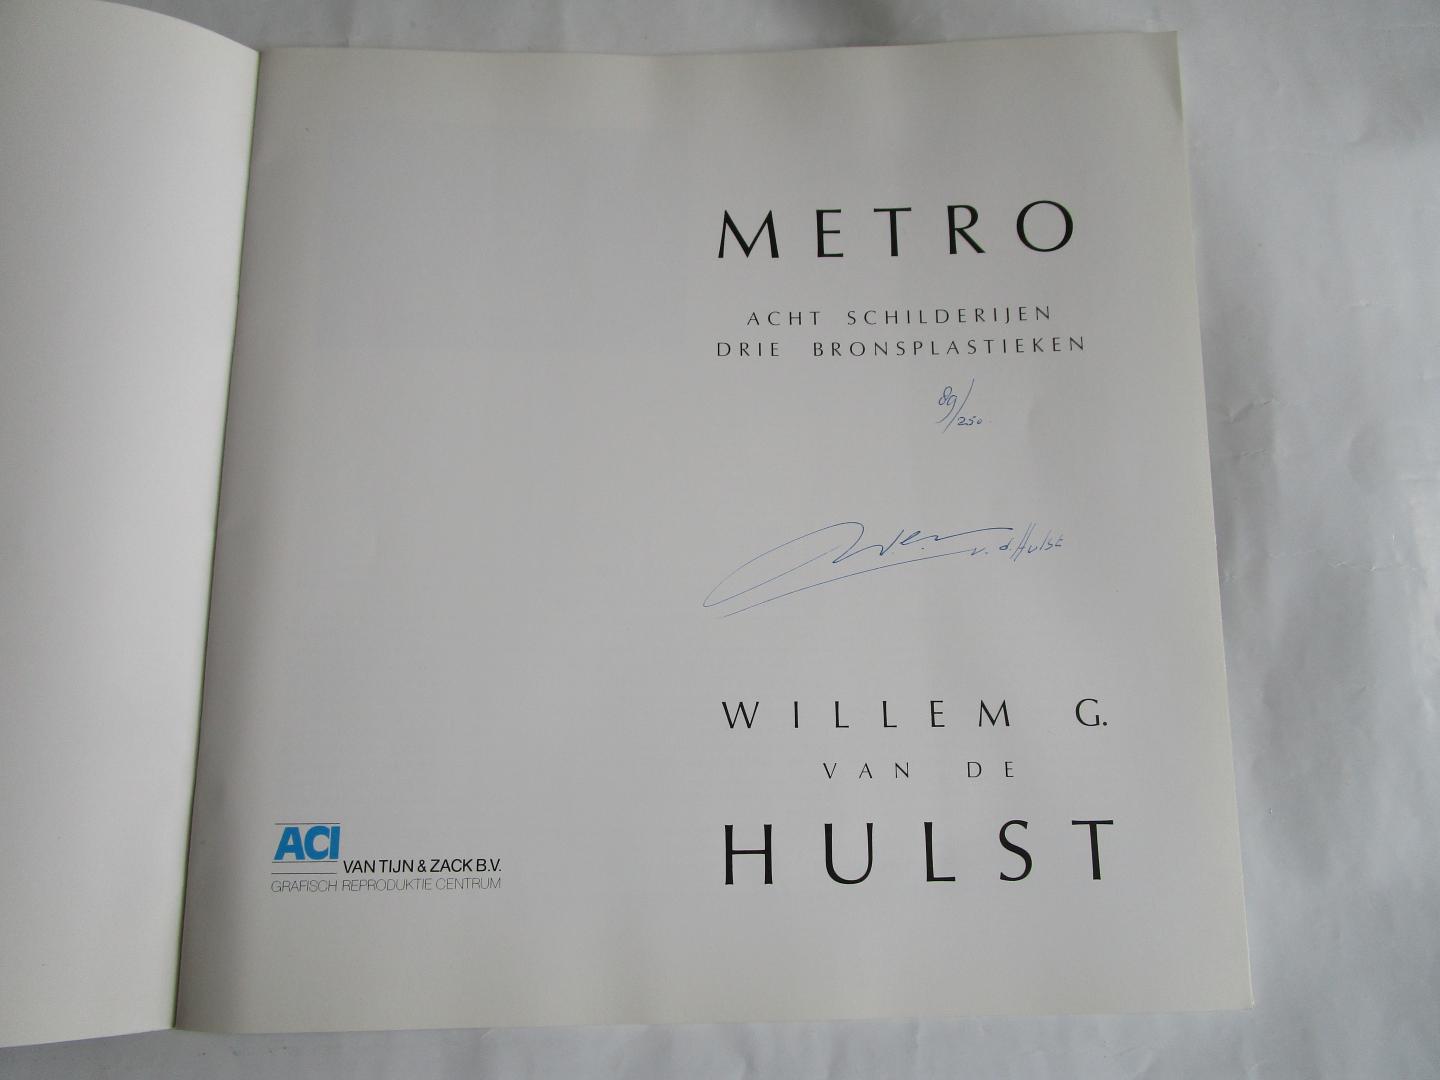 Metro  - acht schilderijen; drie plastieken - - Hulst jr; Willem G. van de